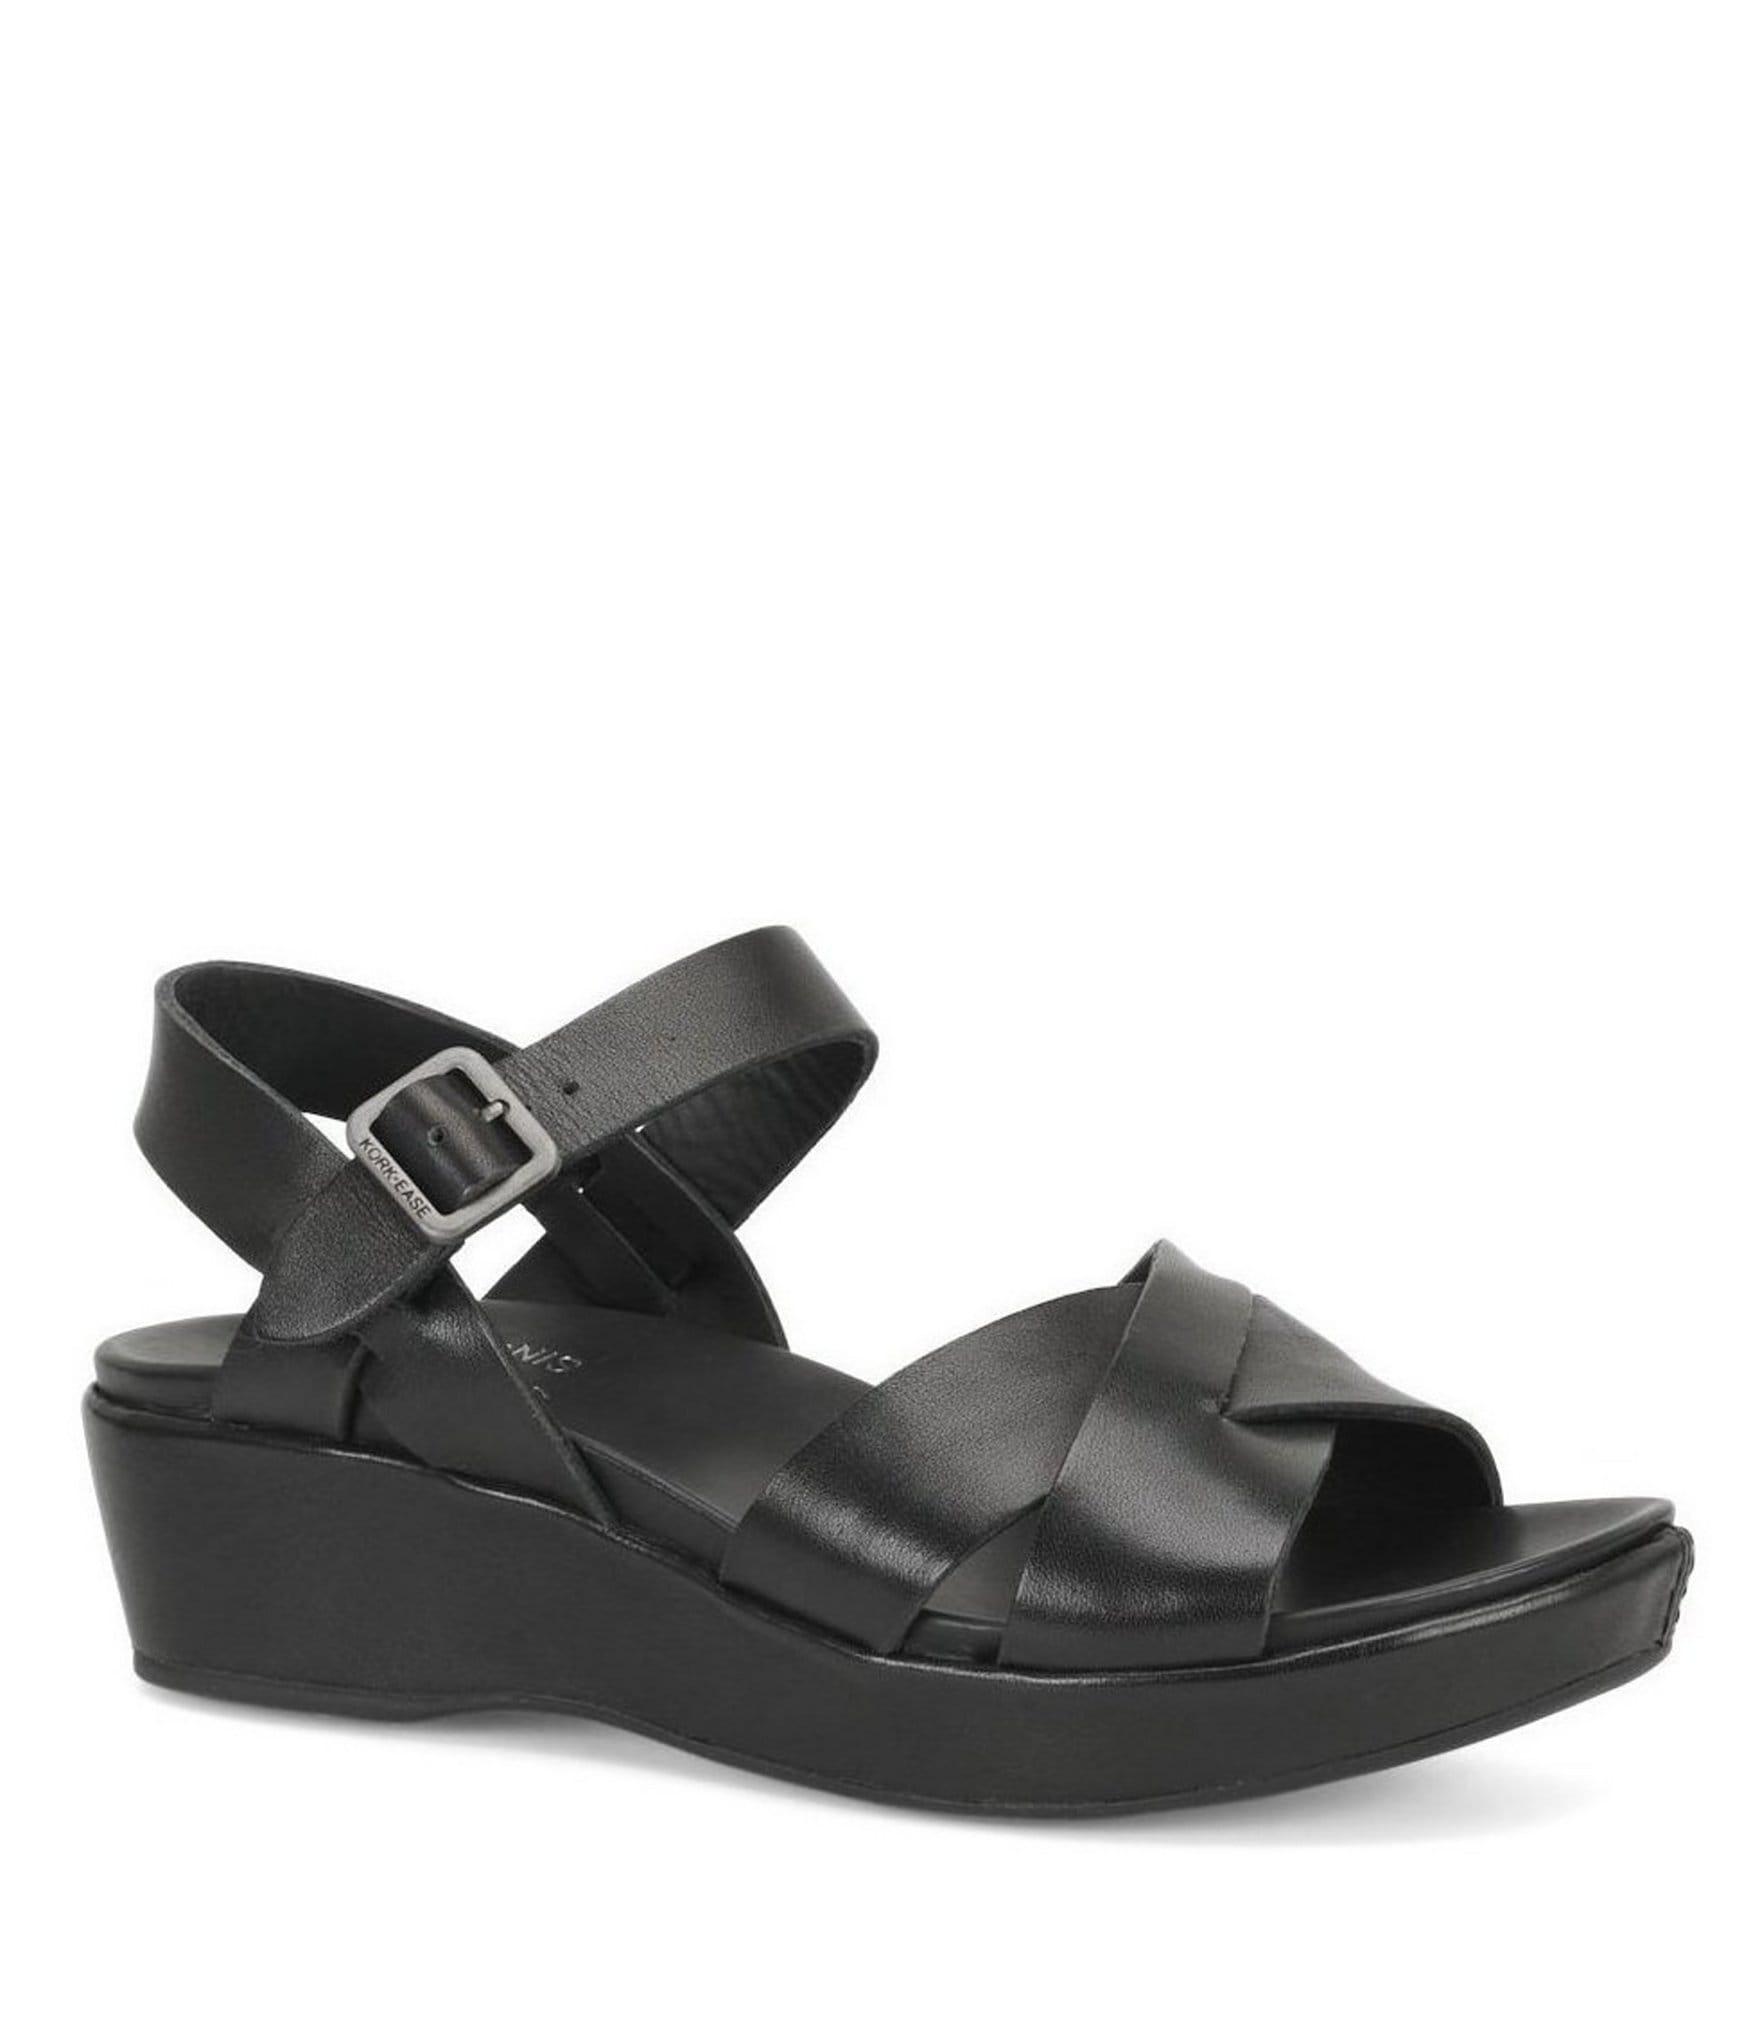 Kork-Ease Myrna 2.0 Ankle-Strap Banded Leather Wedge Sandals | Dillards